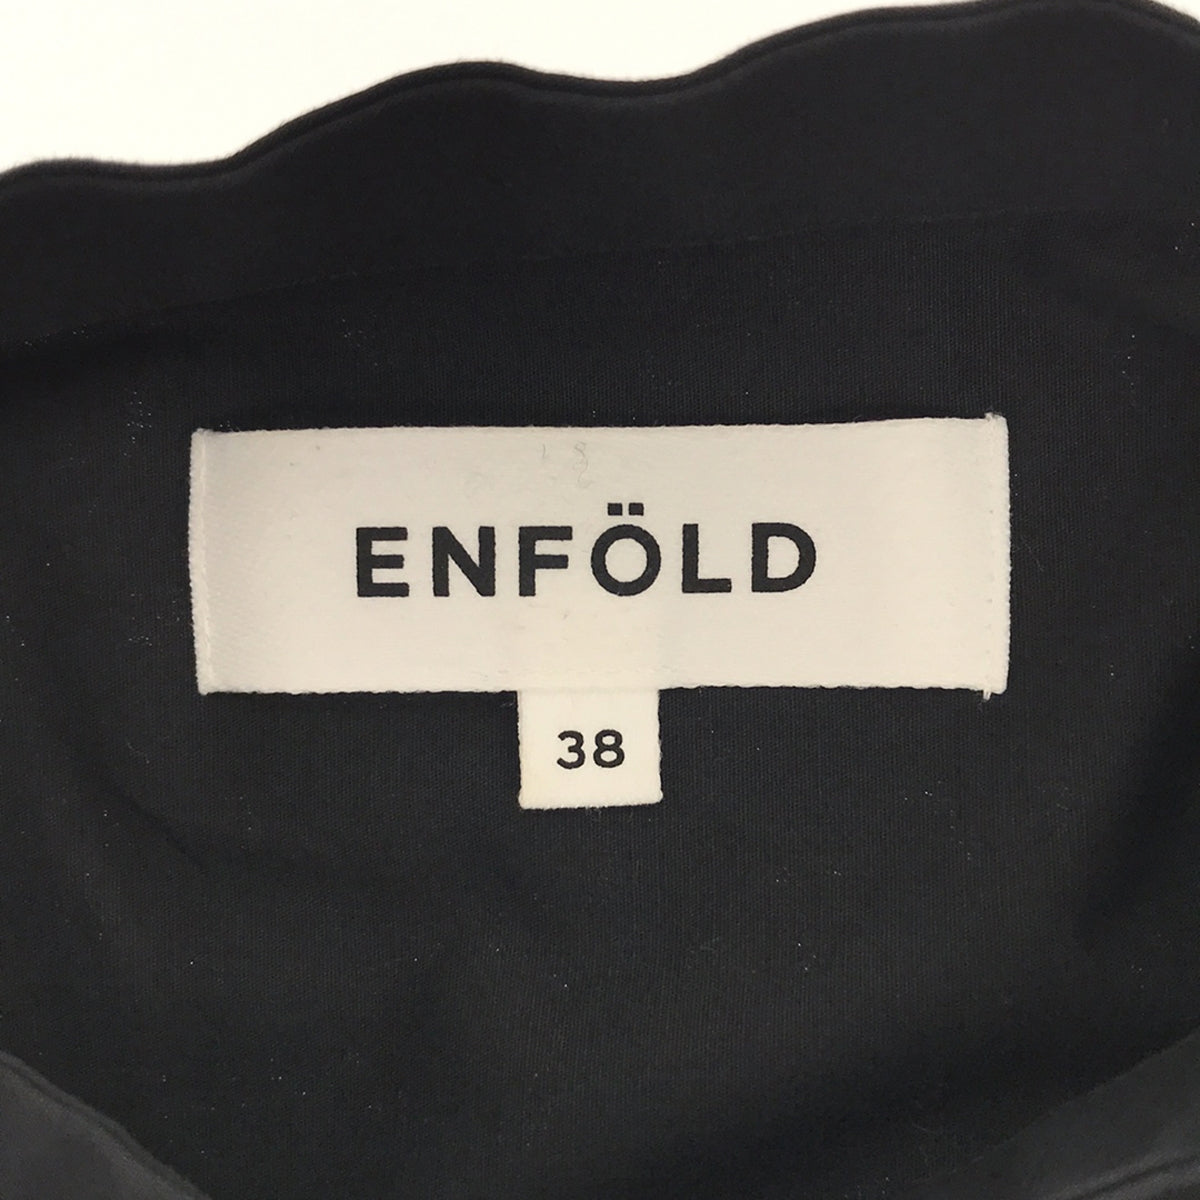 ENFOLD / エンフォルド | SOMELOS レイヤード シャツ ワンピース | 38 